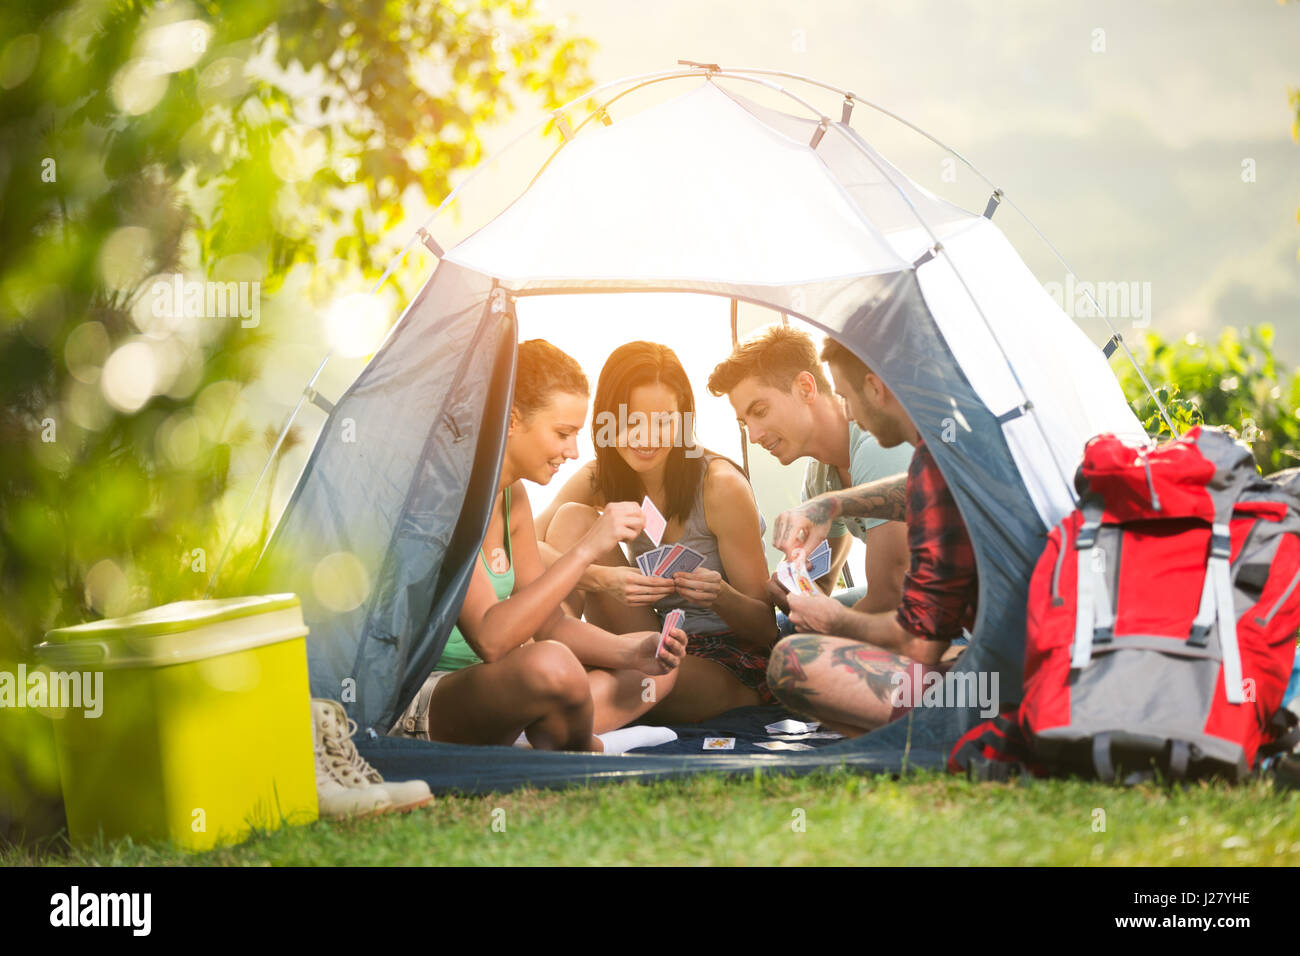 junge Teufel viel Spaß im Zelt am camping-Ausflug Stockfoto